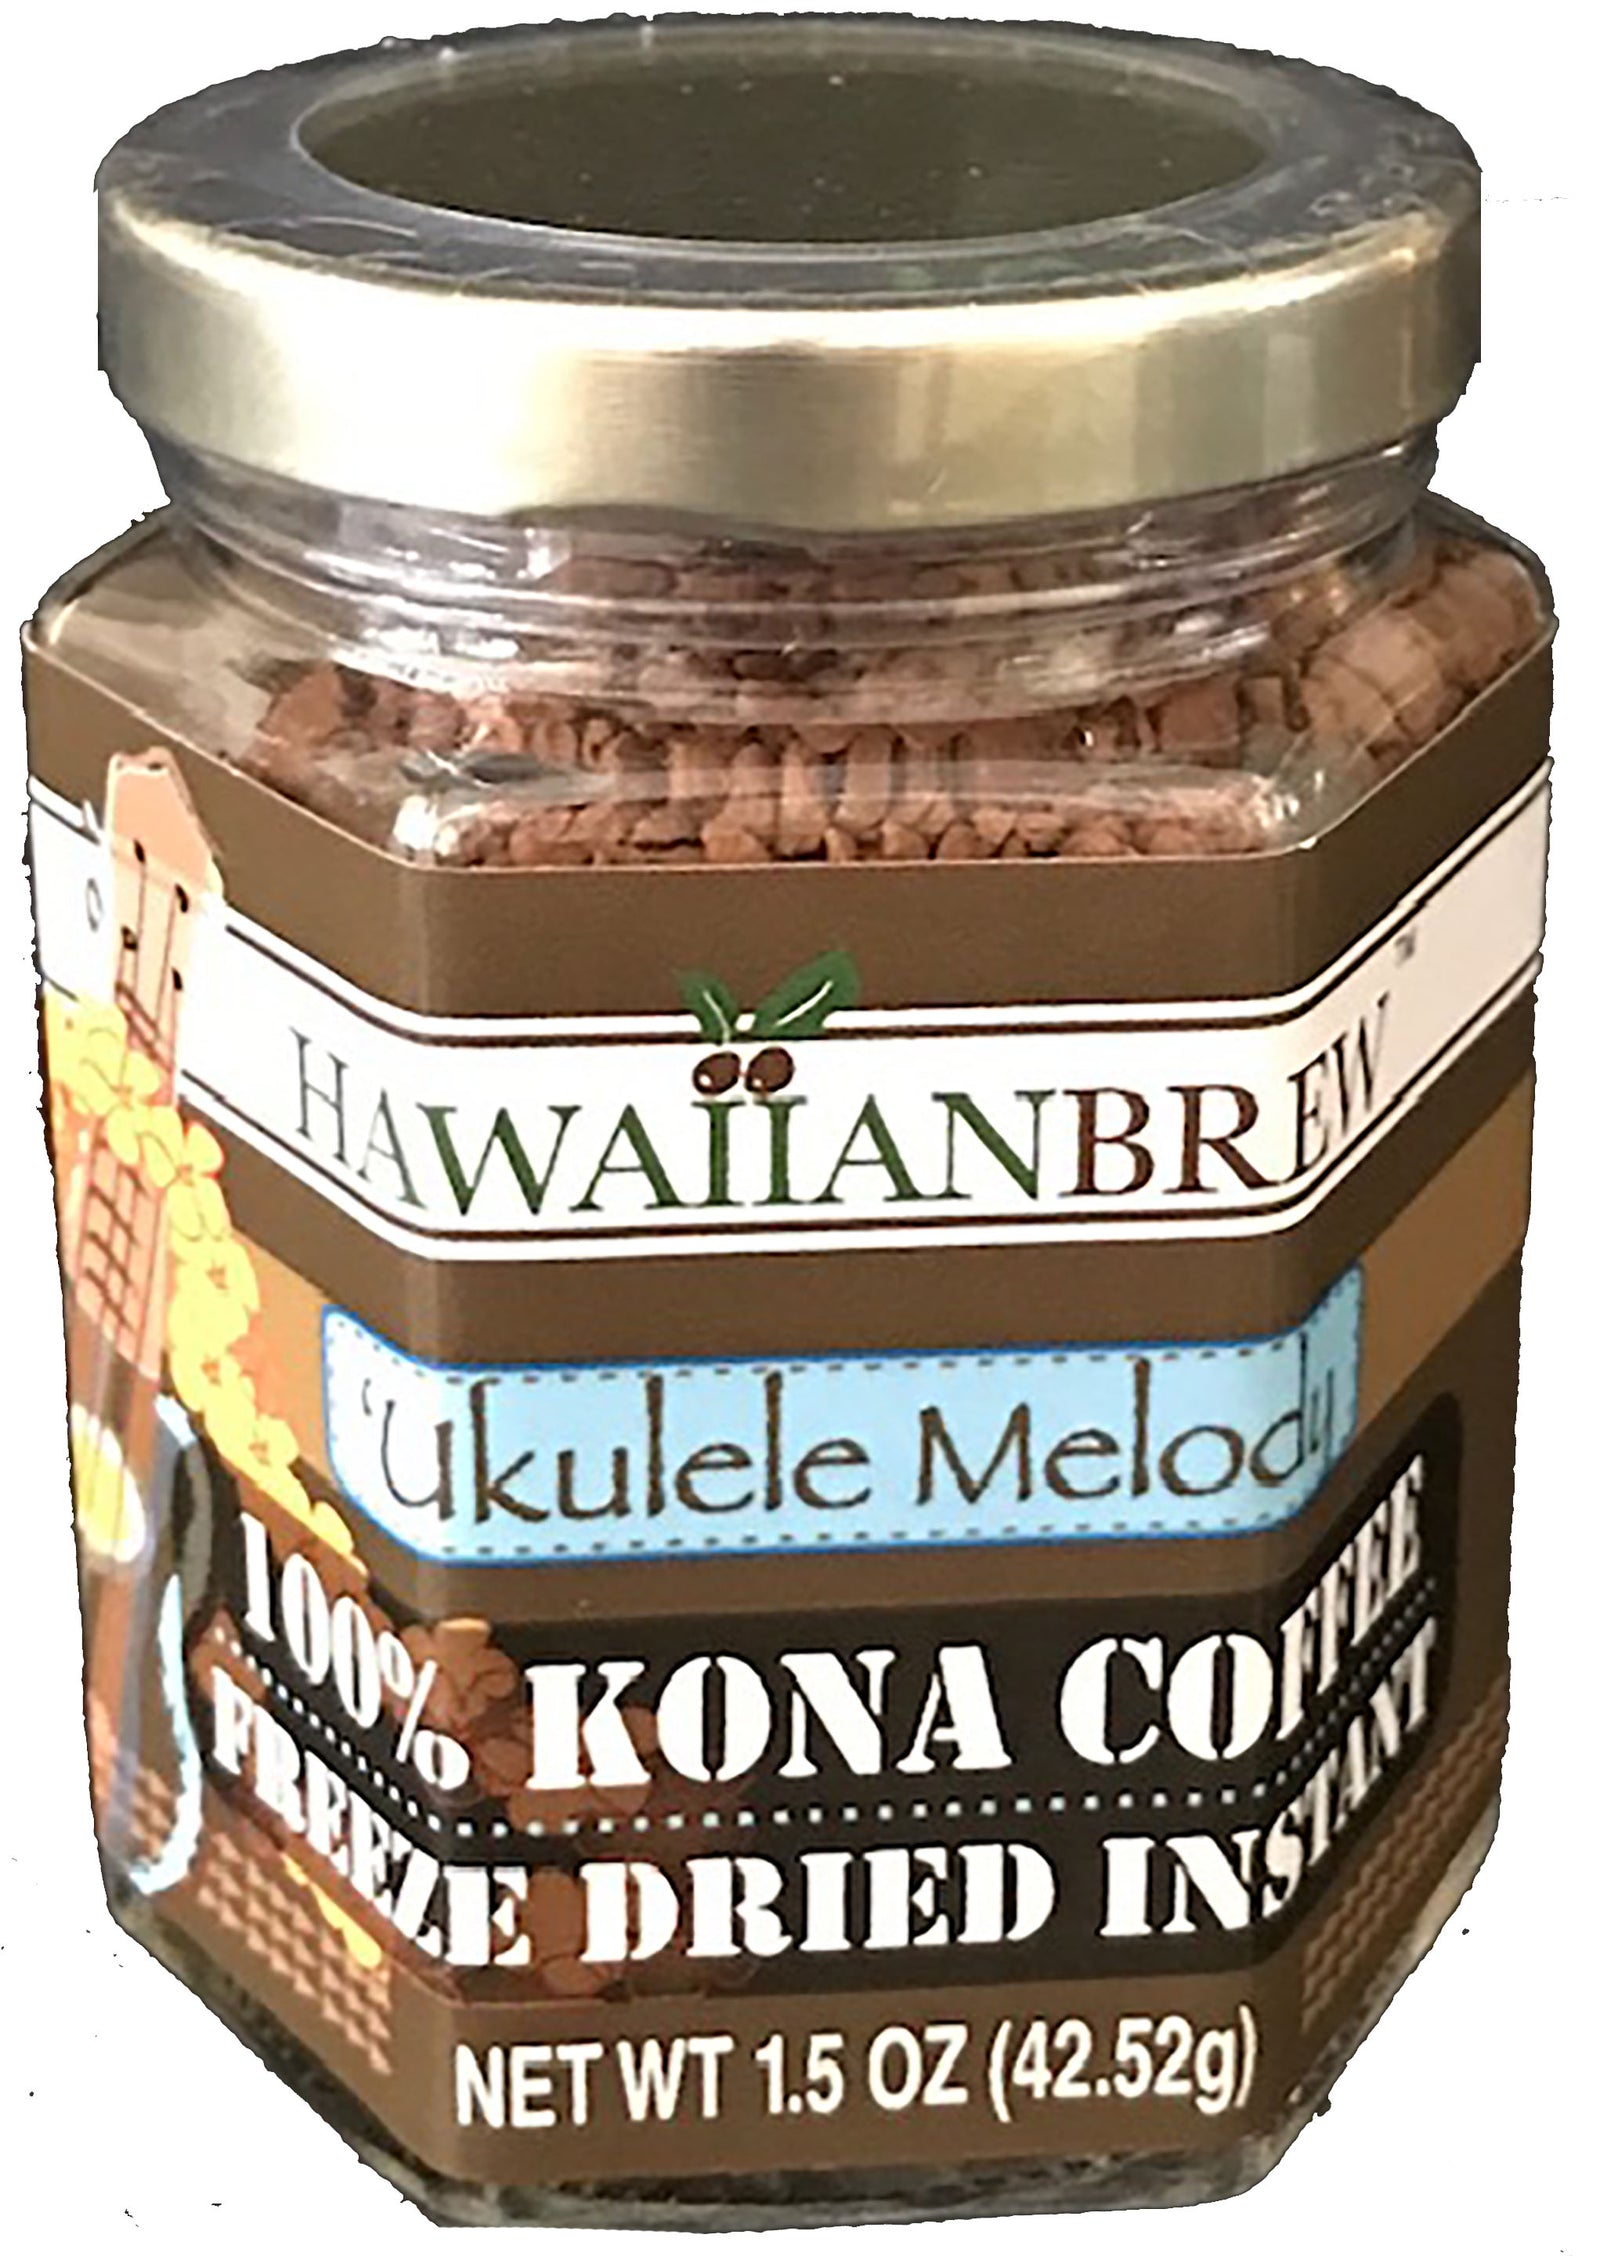 100% Kona Coffee Freeze Dried Instant